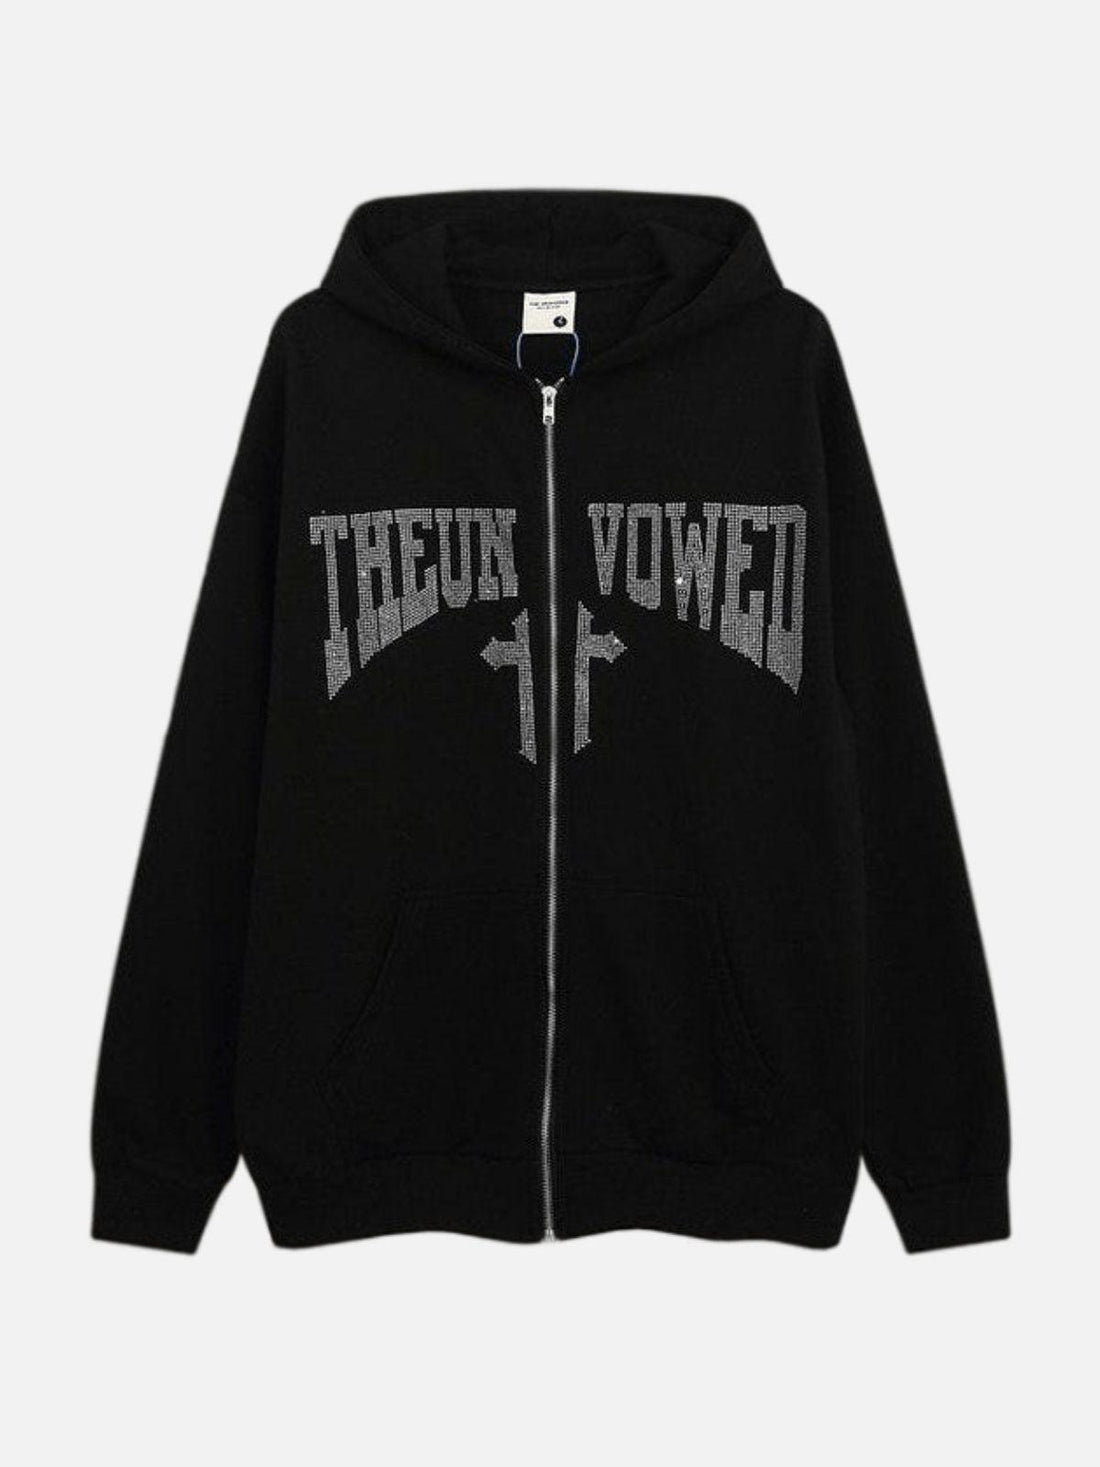 UNVOWED - Rhinestone Zip Up Hoodie Black | Teenwear.eu